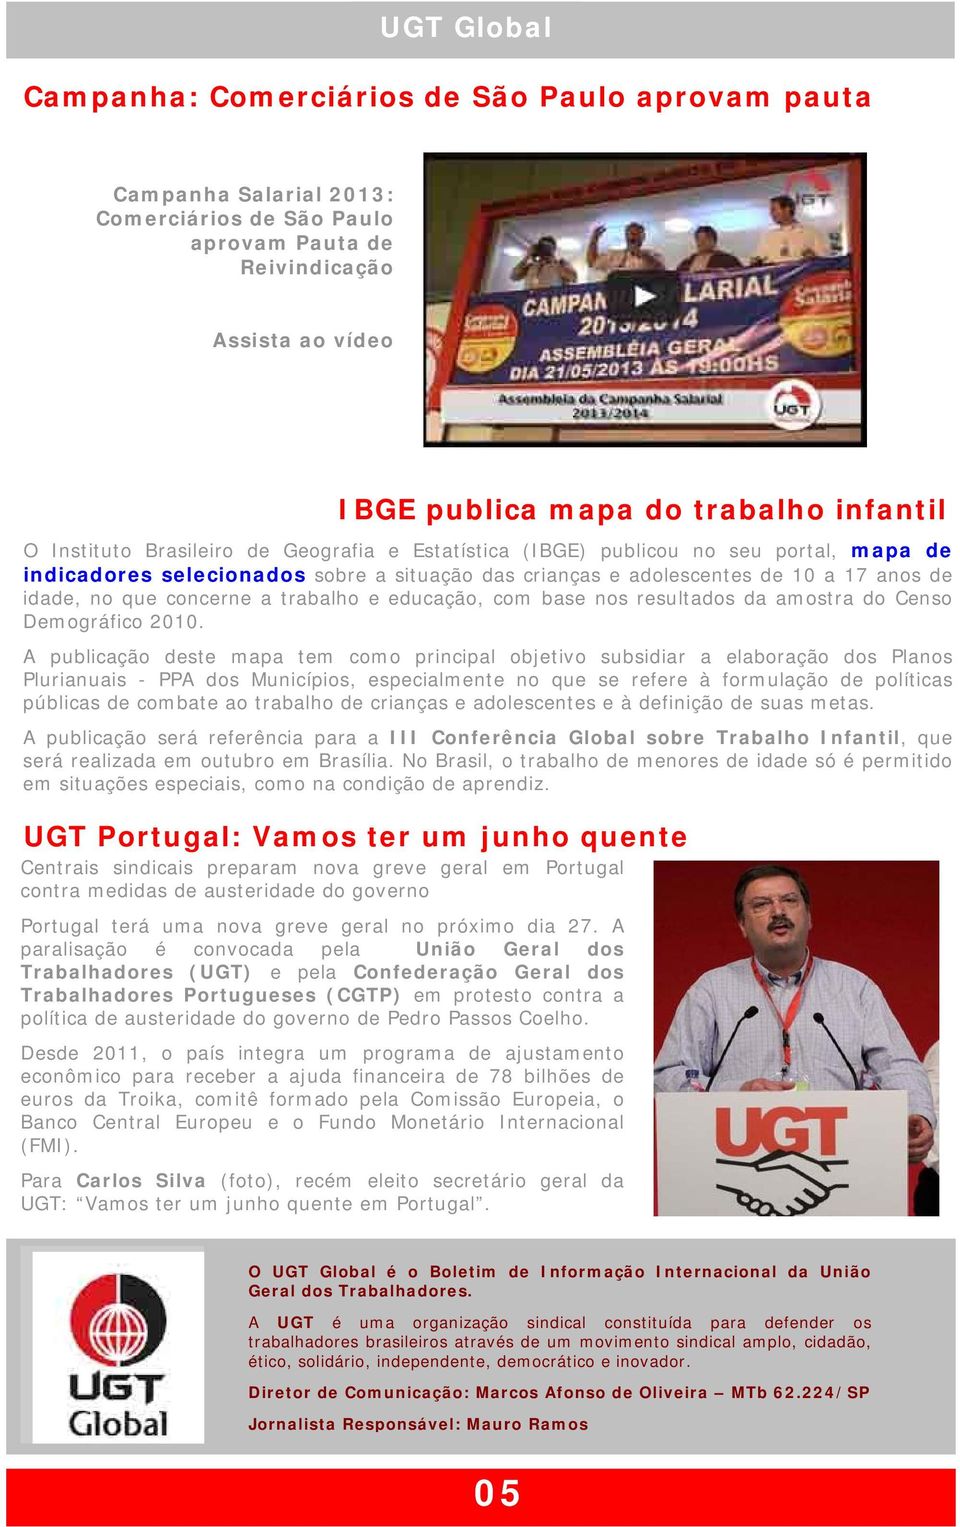 A paralisação é convocada pela União Geral dos Trabalhadores (UGT) e pela Confederação Geral dos Trabalhadores Portugueses (CGTP) em protesto contra a política de austeridade do governo de Pedro